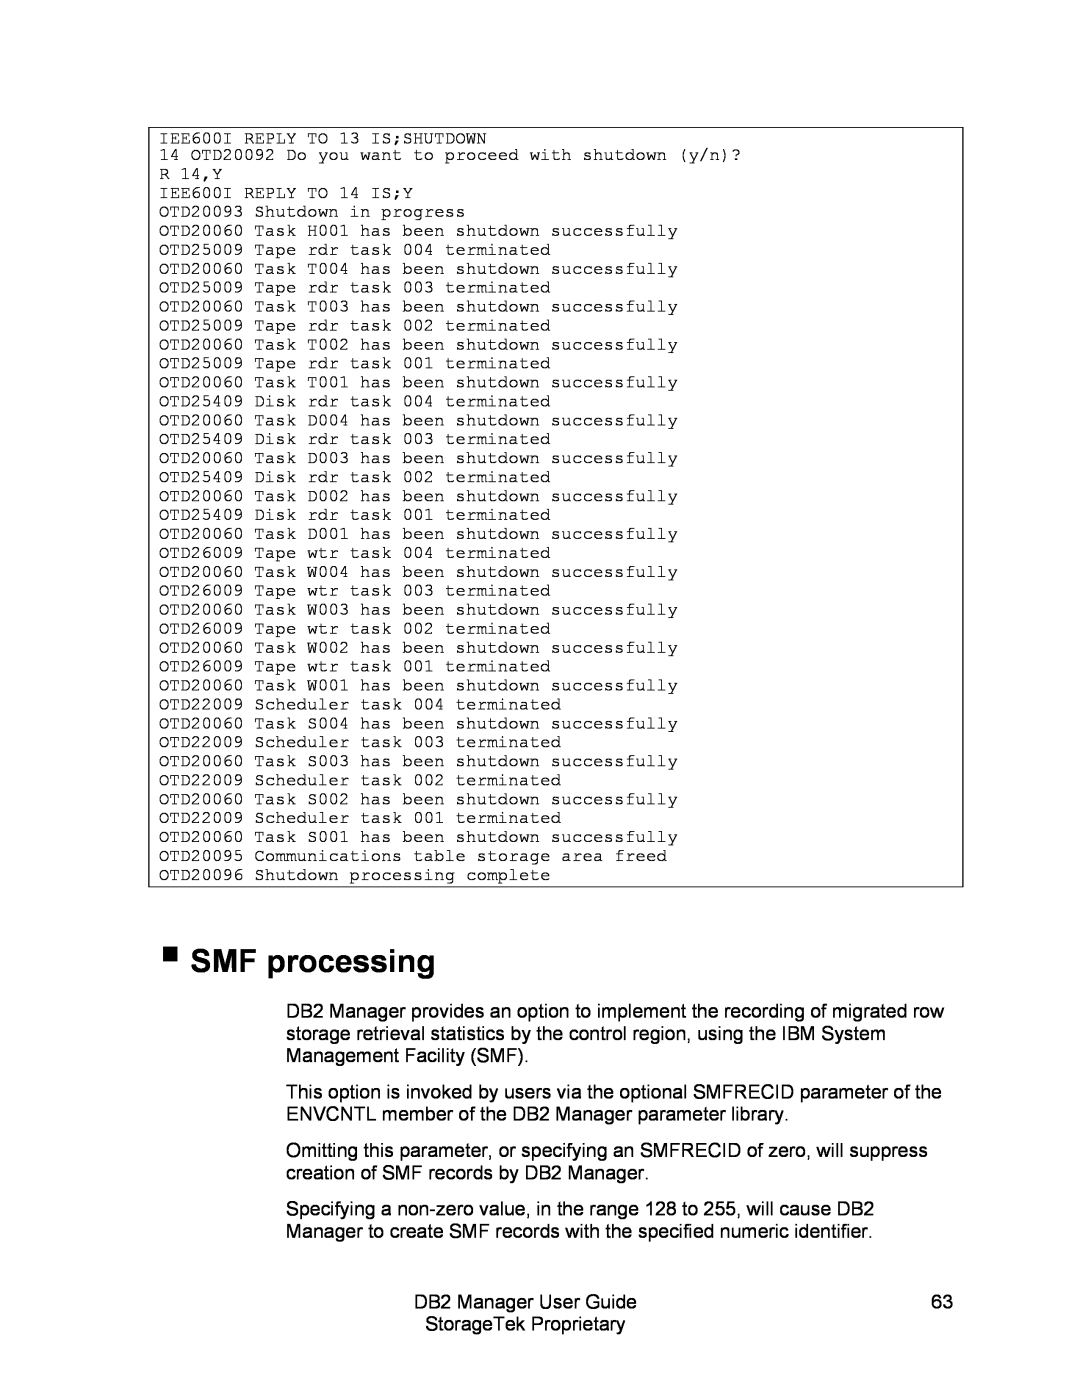 StorageTek 312564001 manual SMF processing 